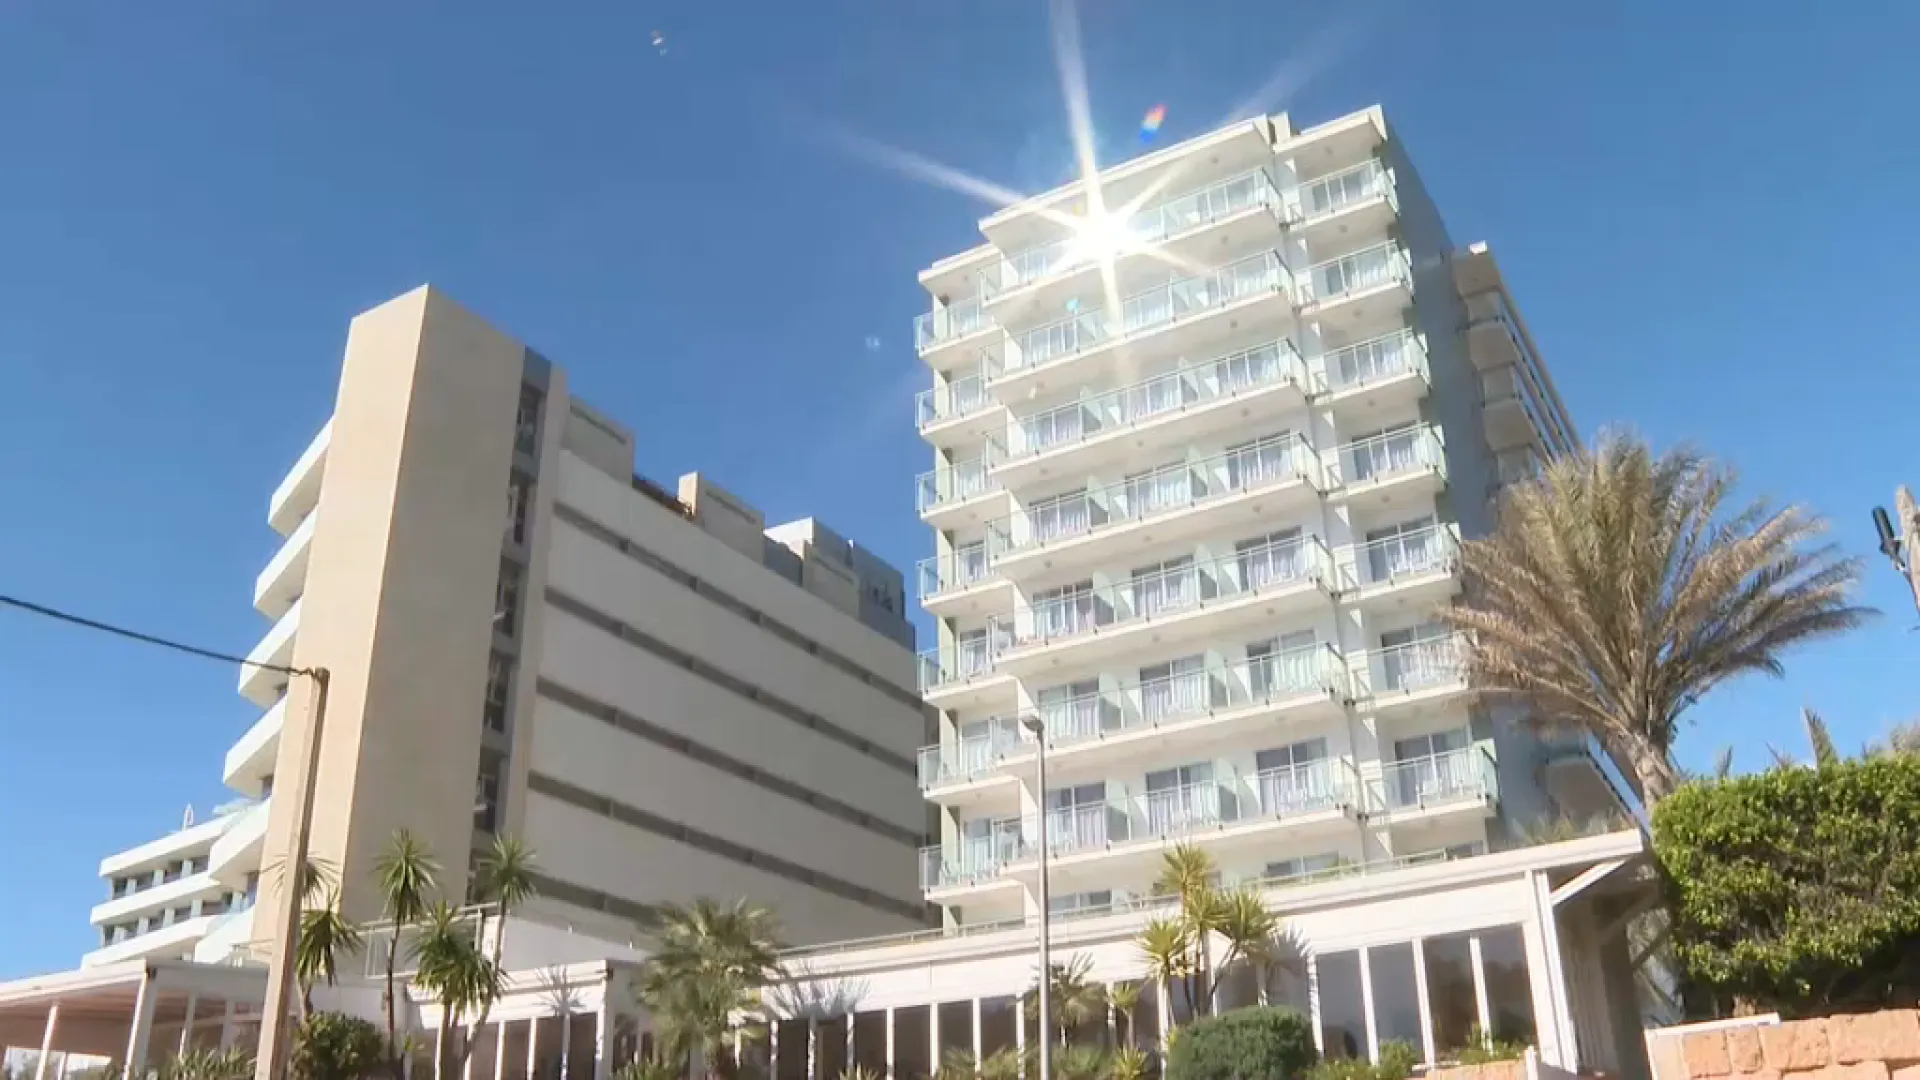 Mor un turista després de caure del balcó d’un hotel a Platja de Palma